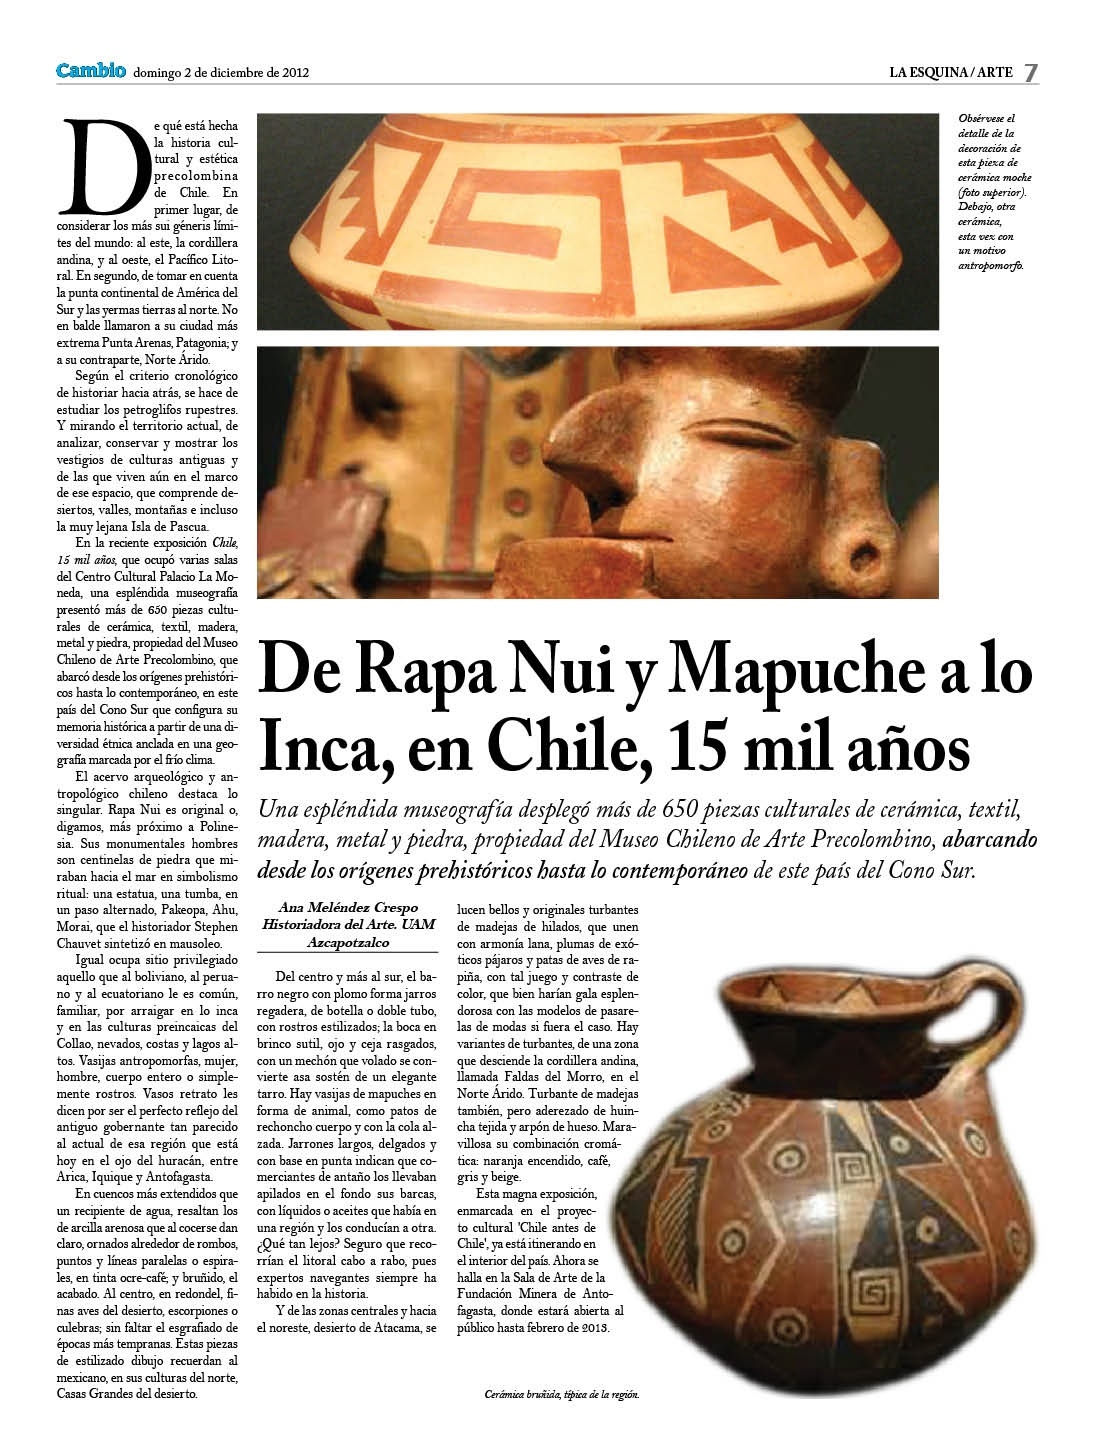 De Rapa Nui y Mapuche a lo Inca, Chile, 15 mil años